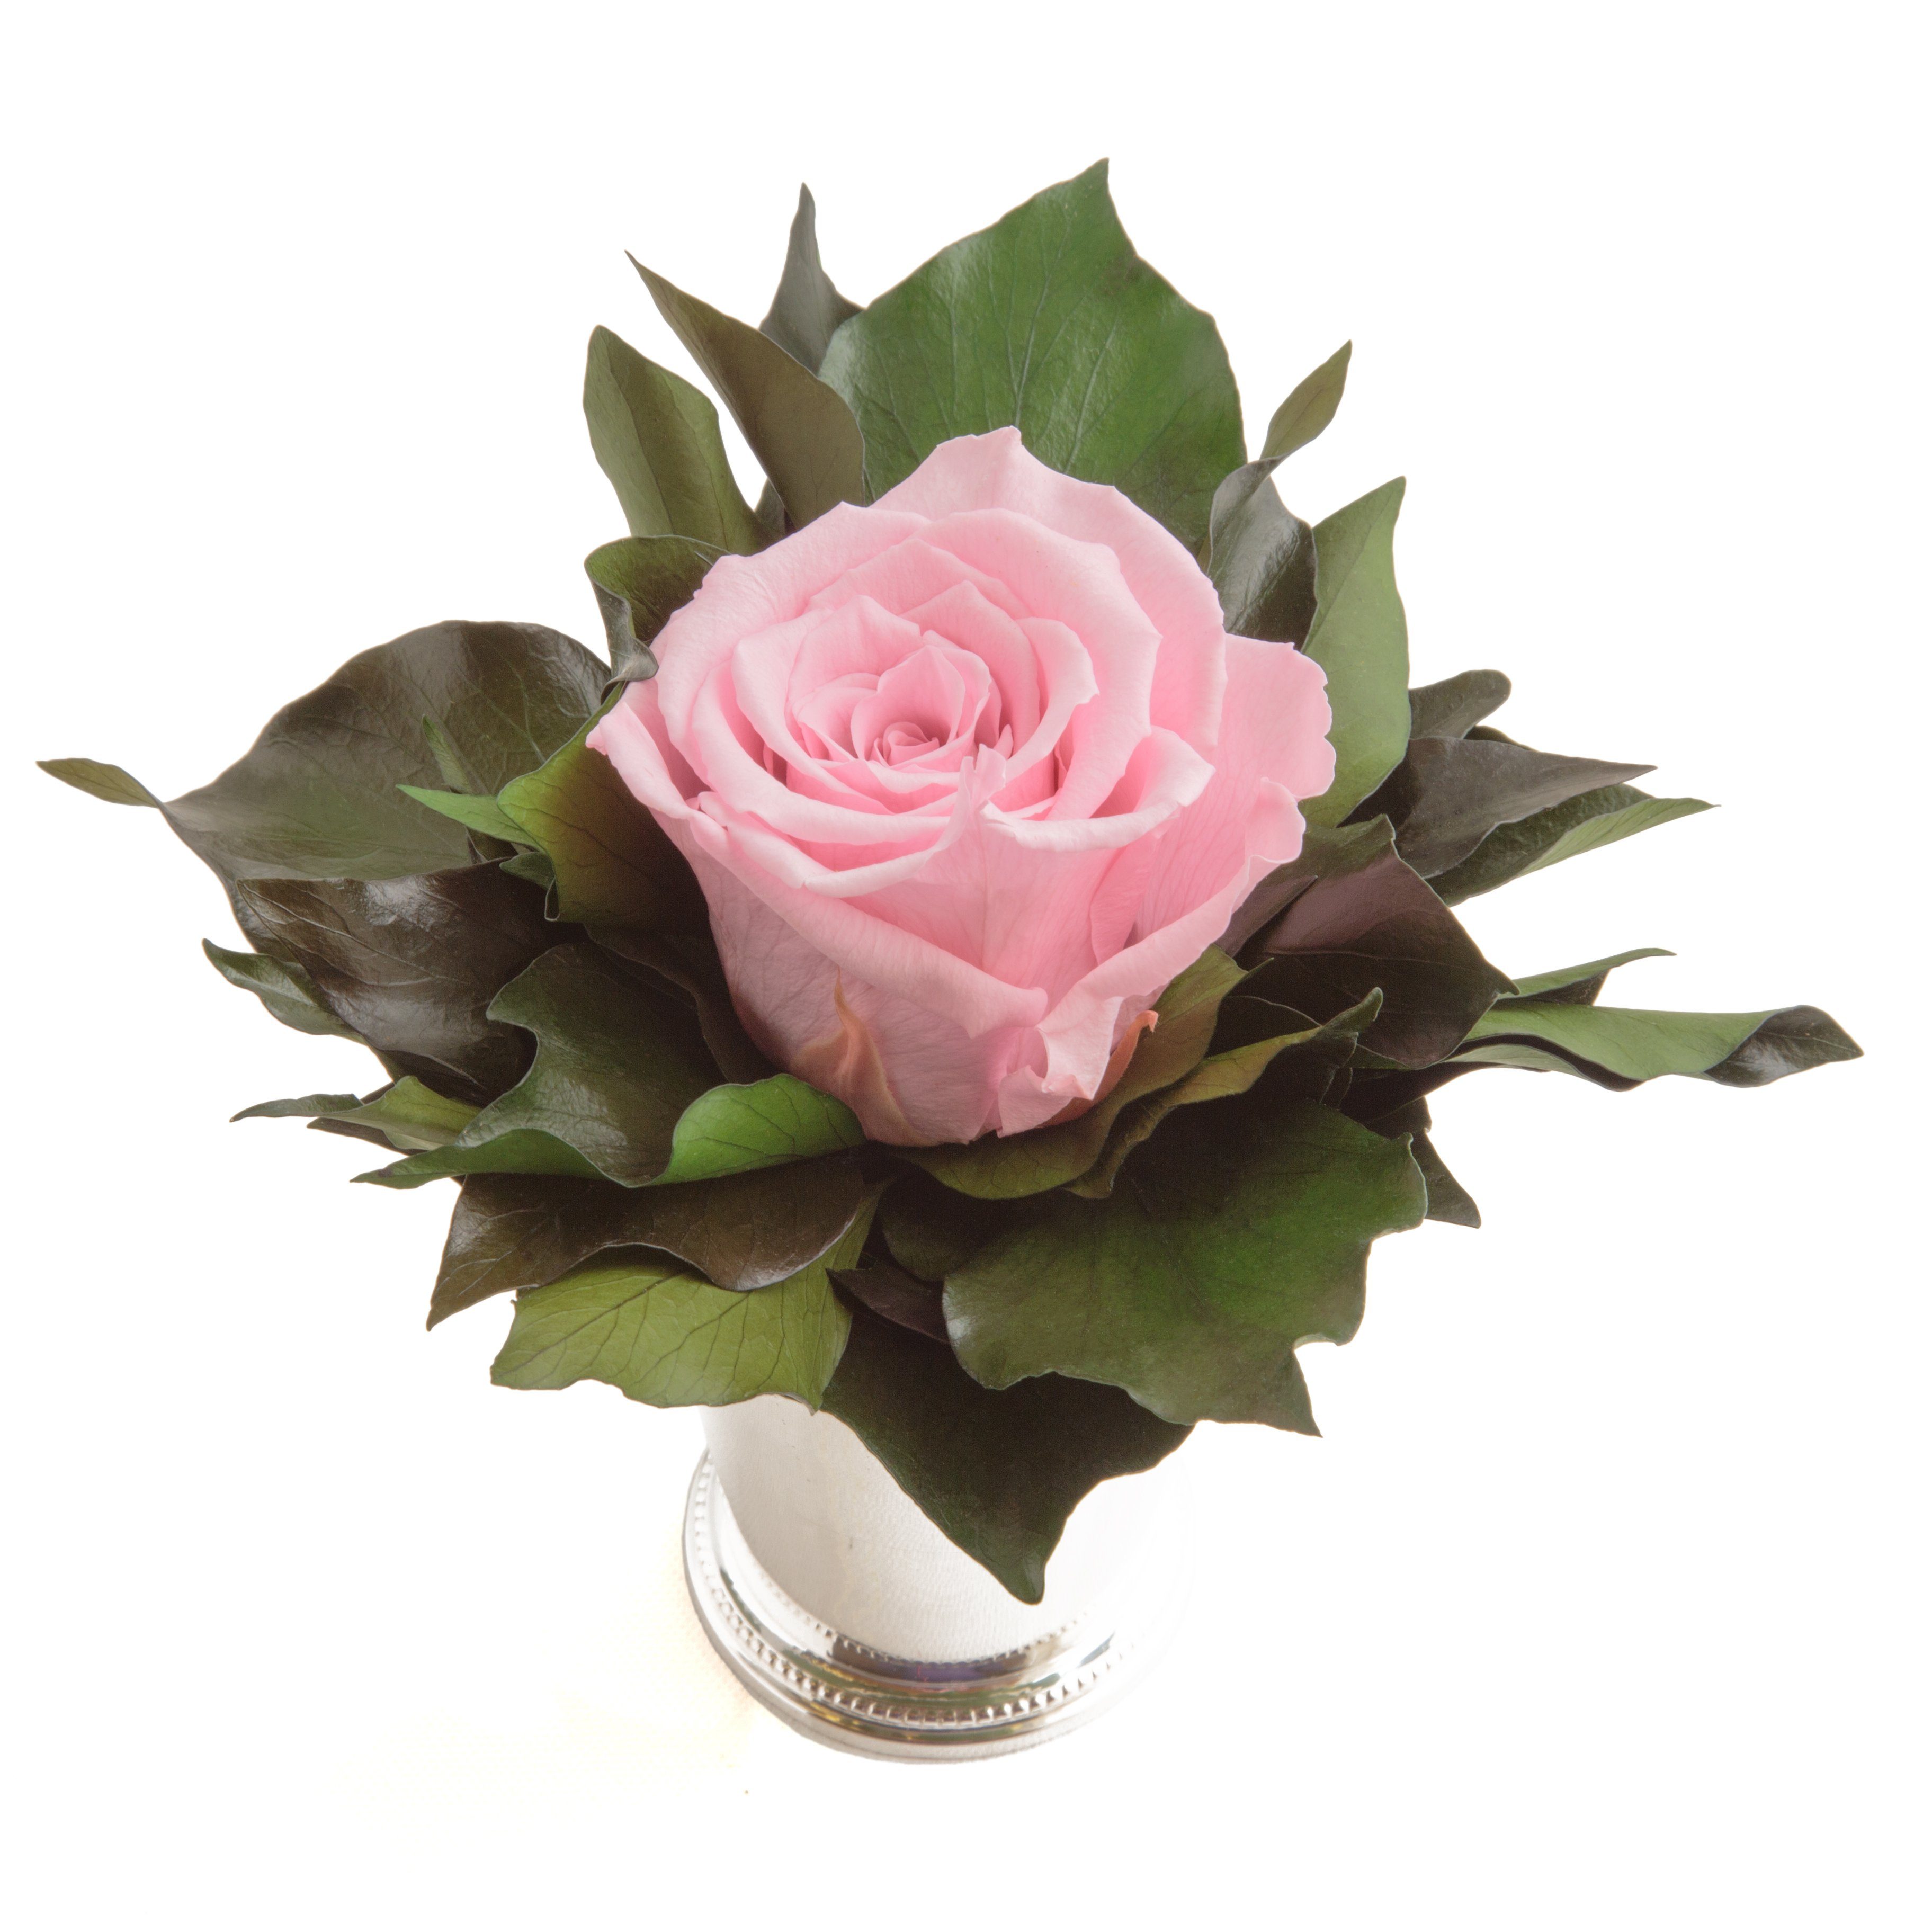 Echte haltbar Blume 12 Frauen lange SCHULZ Rose ROSEMARIE für Zimmerpflanze Rose, 1 Infinity Rosa Höhe Künstliche Heidelberg, Geschenkidee cm, silberfarben Becher